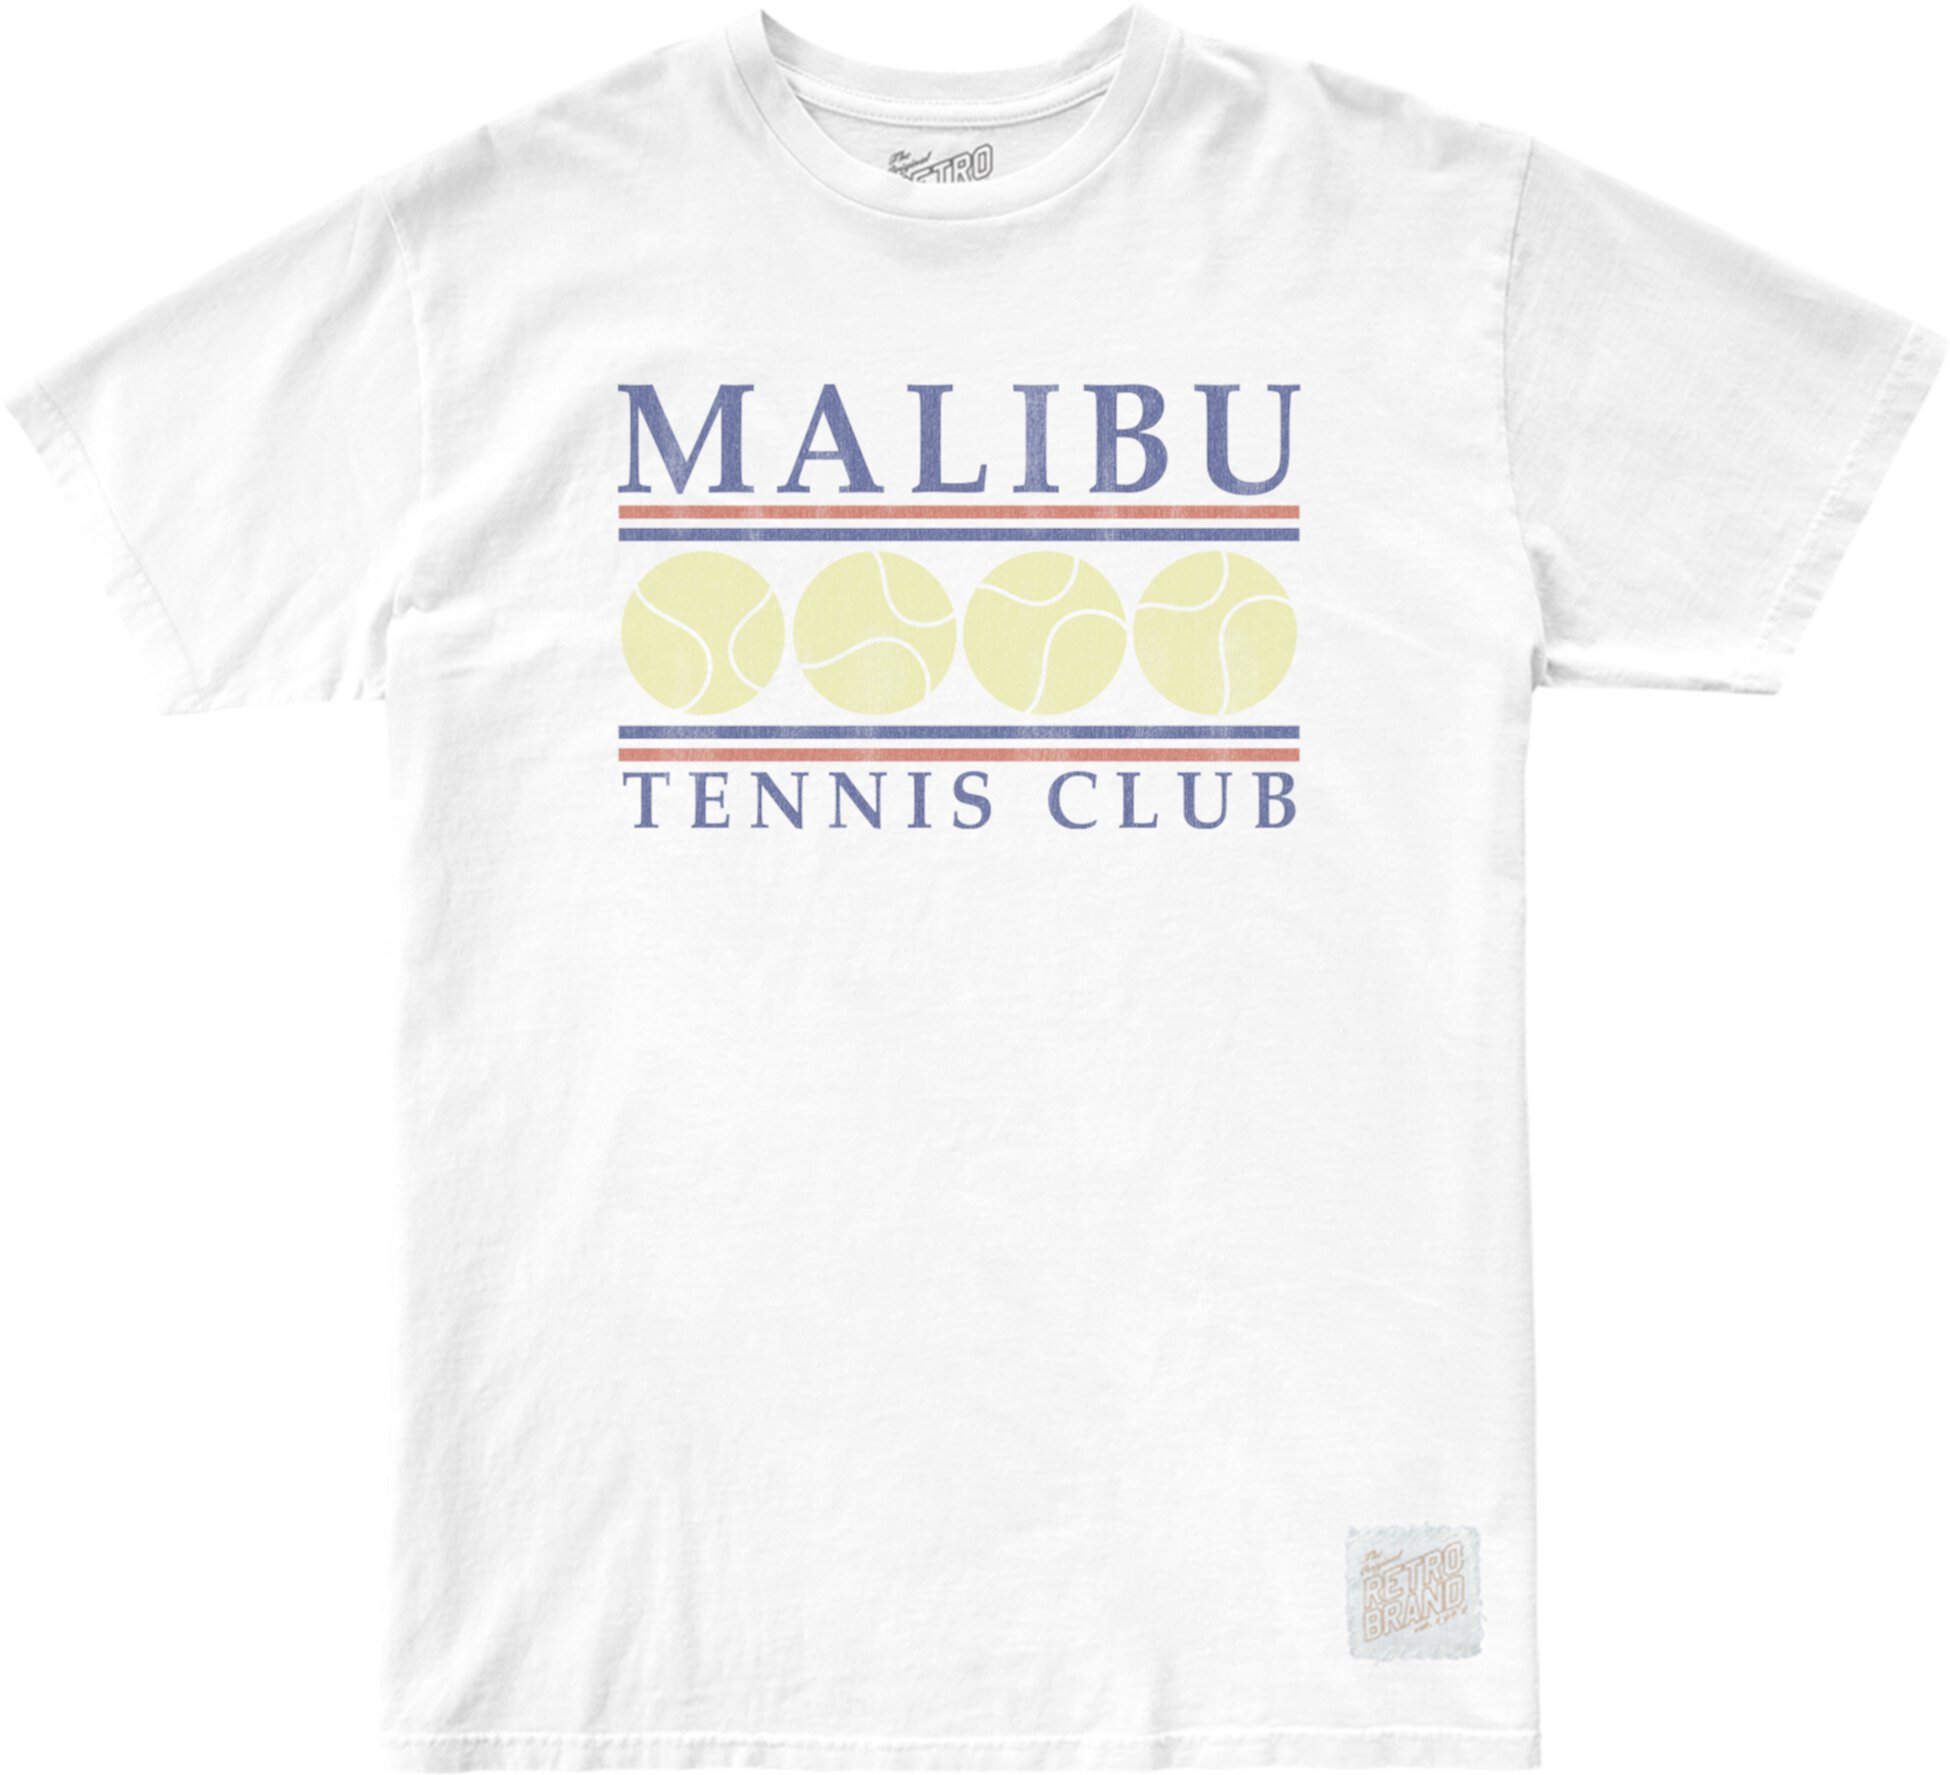 Футболка Malibu Tennis с круглым вырезом из 100 % хлопка (для больших детей) The Original Retro Brand Kids